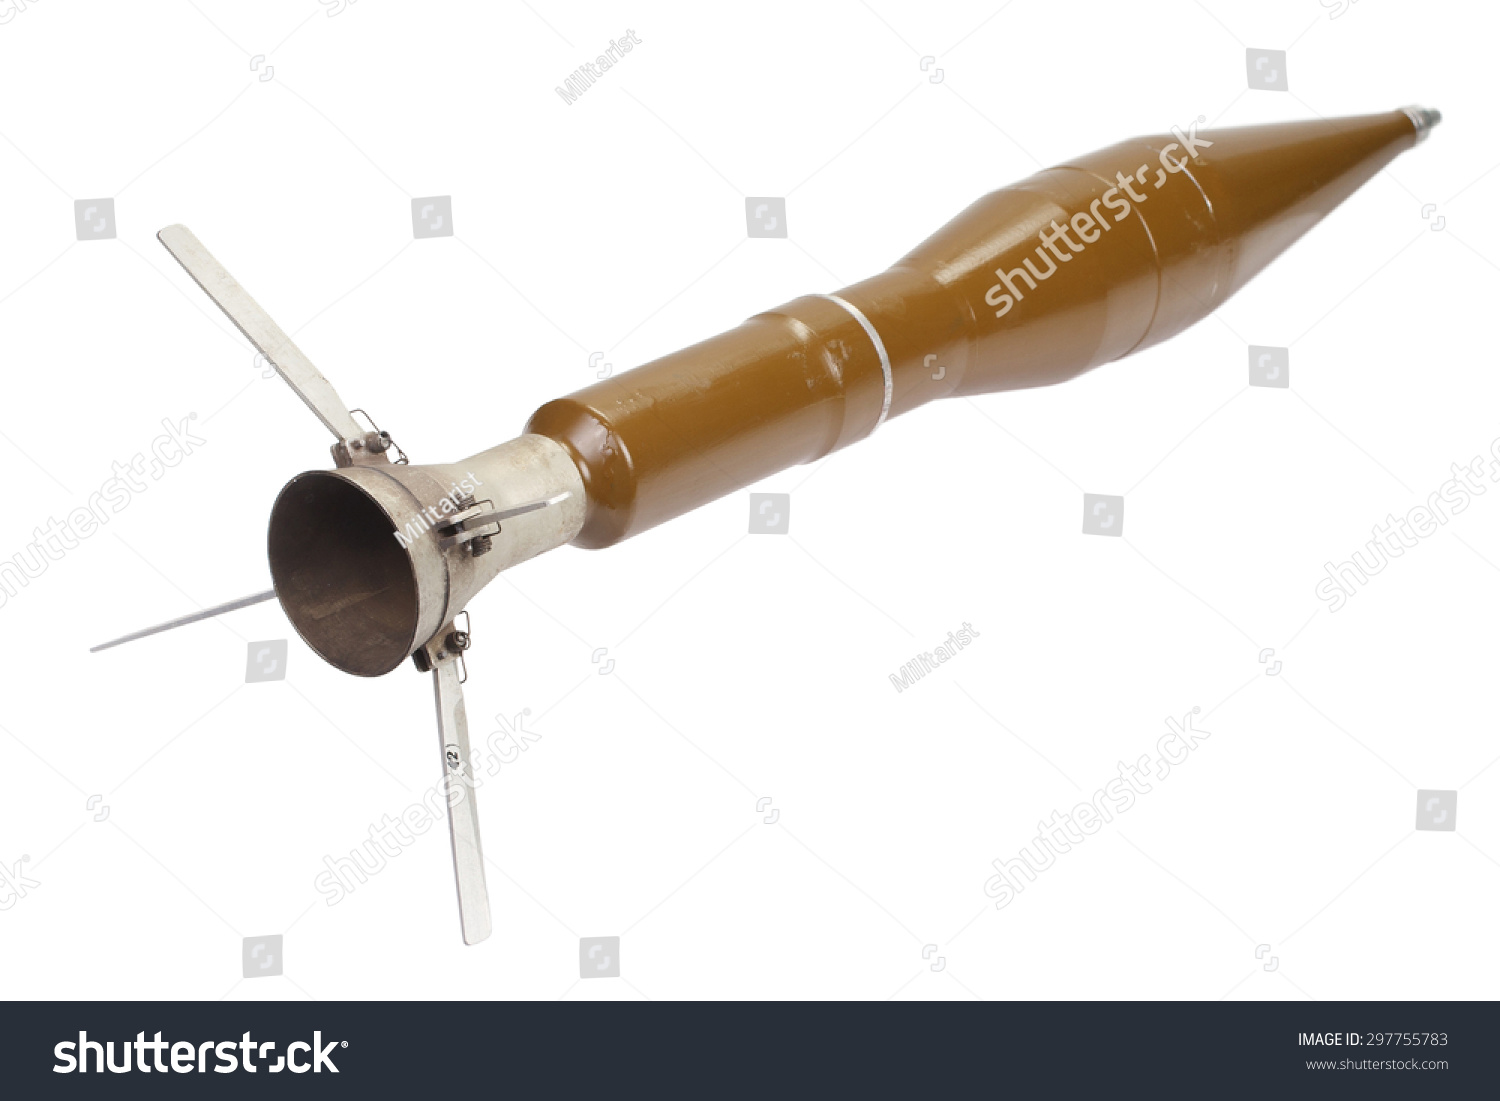 الاسلحة اليدوية المضادة للدبابات Stock-photo-anti-tank-rocket-propelled-grenade-with-heat-warhead-297755783